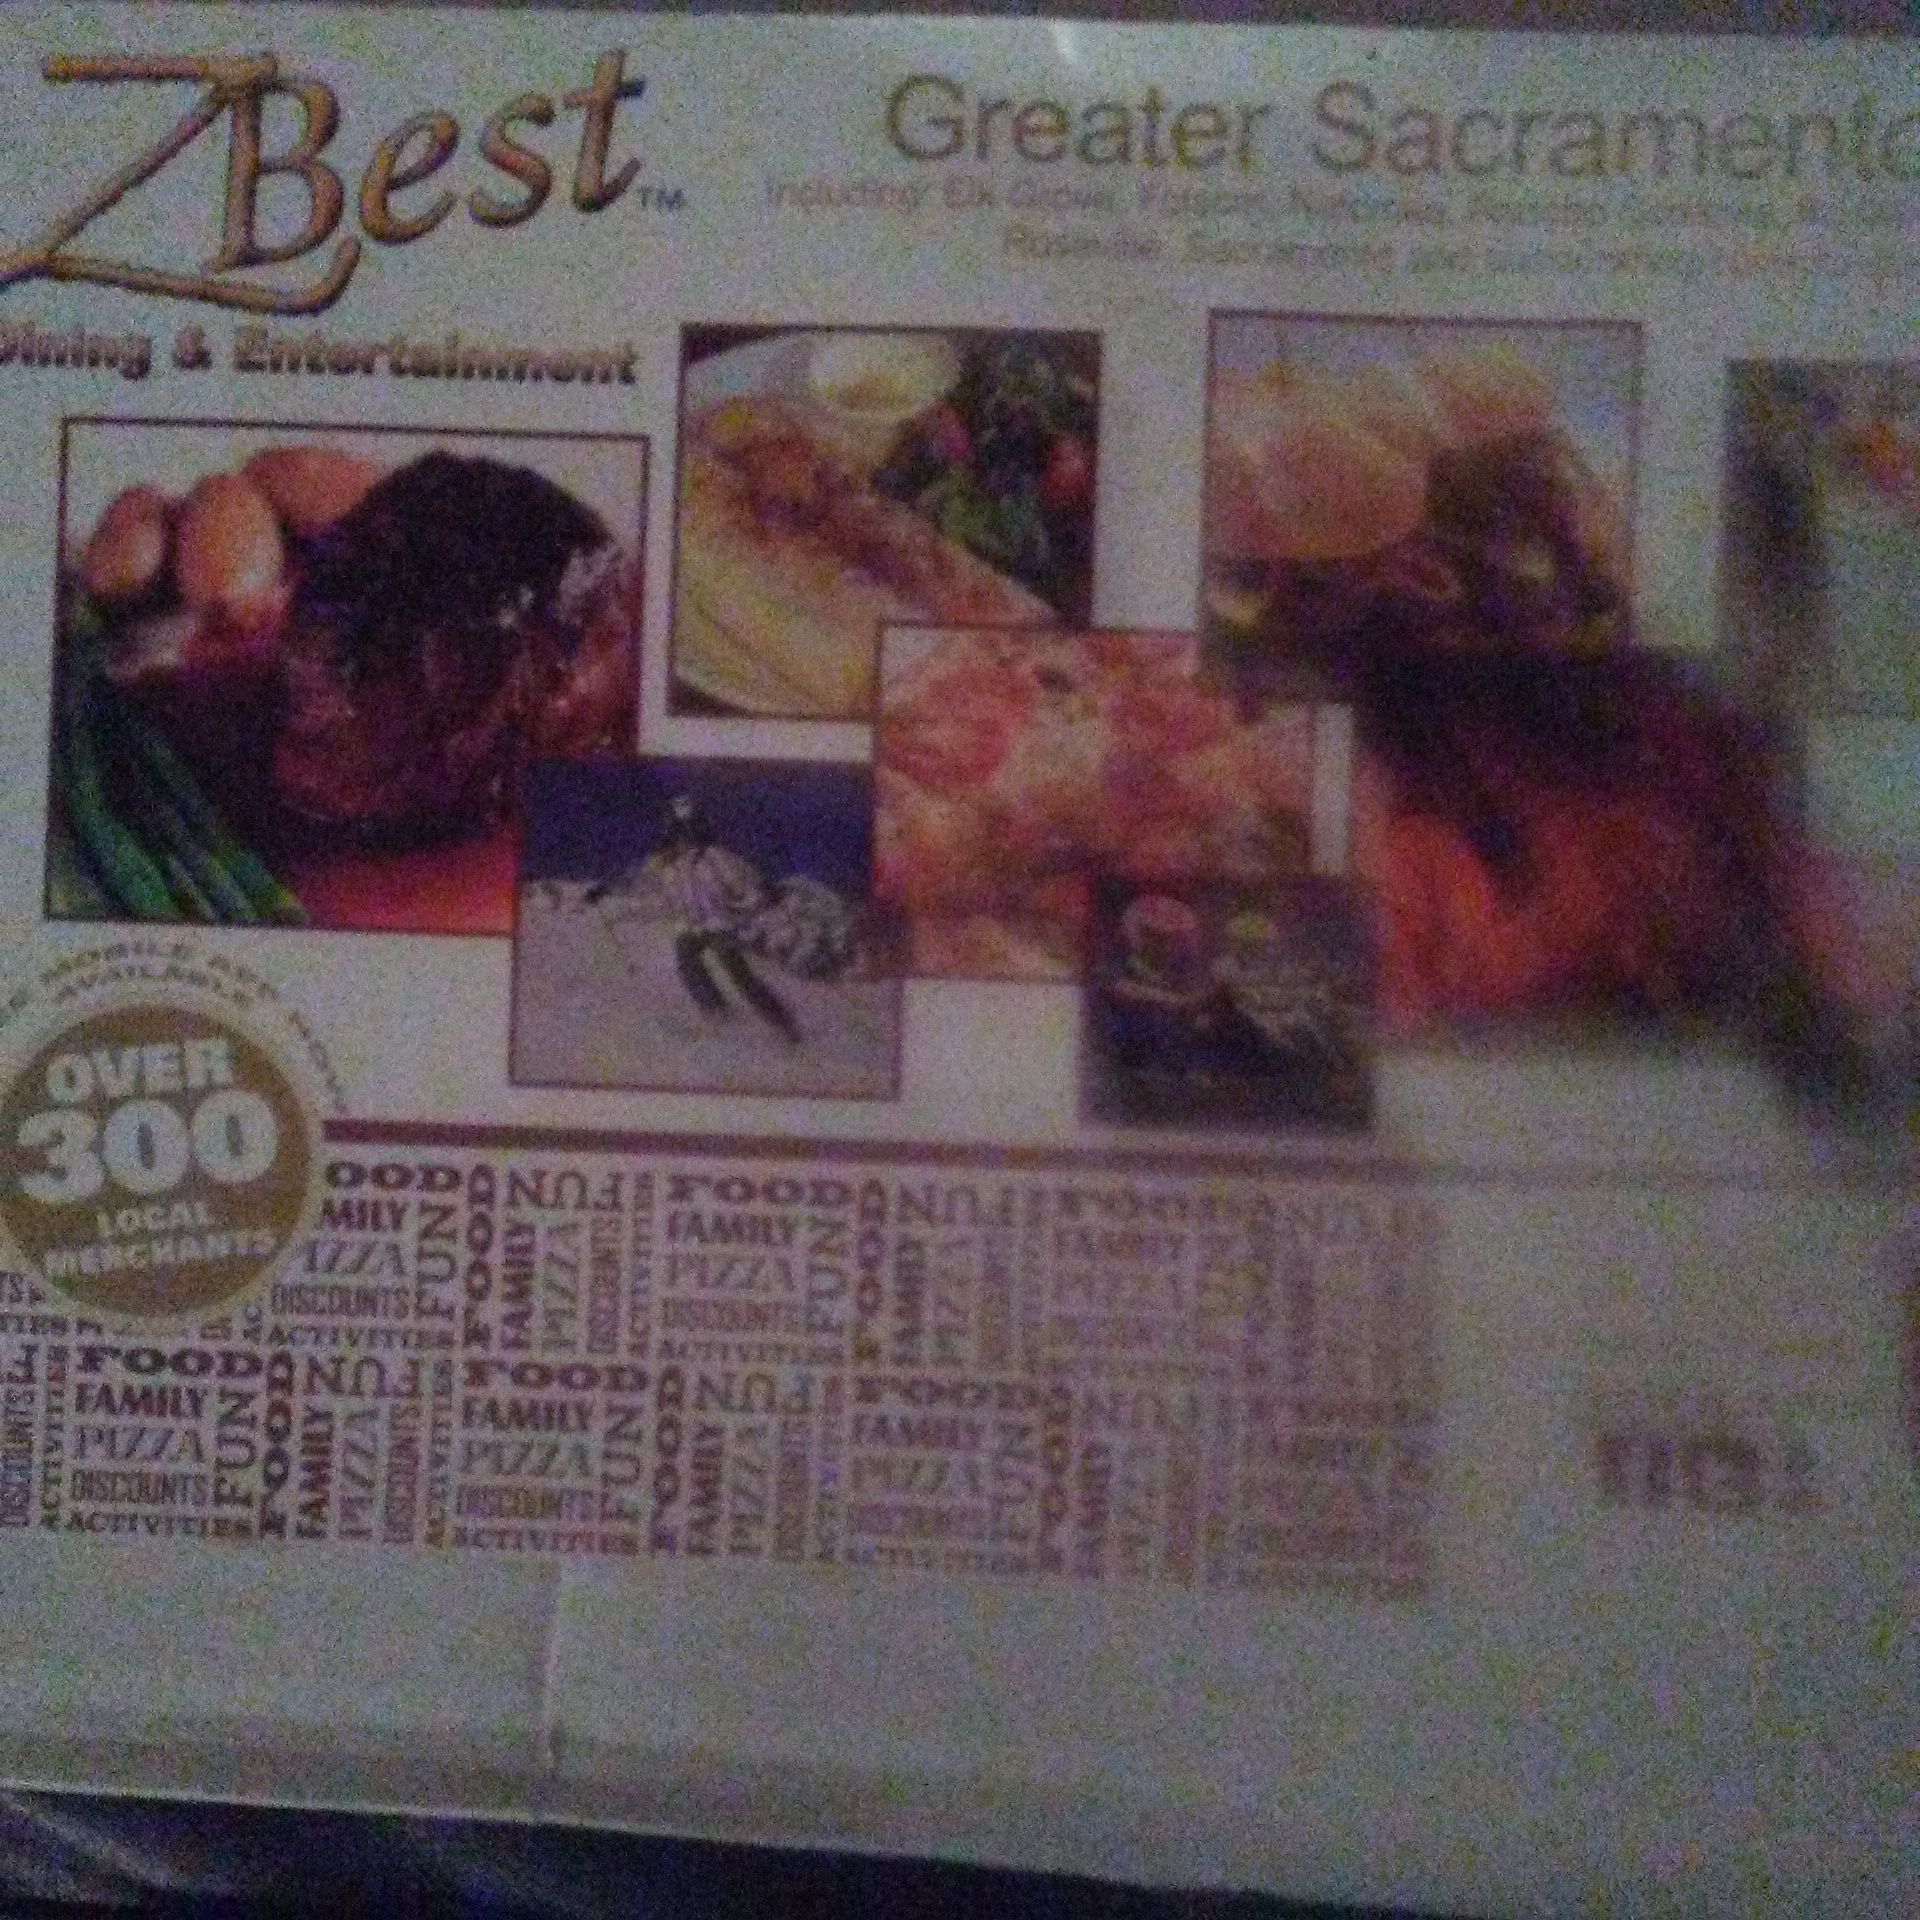 ZBest Greater Sacramento 2018 Coupon Book